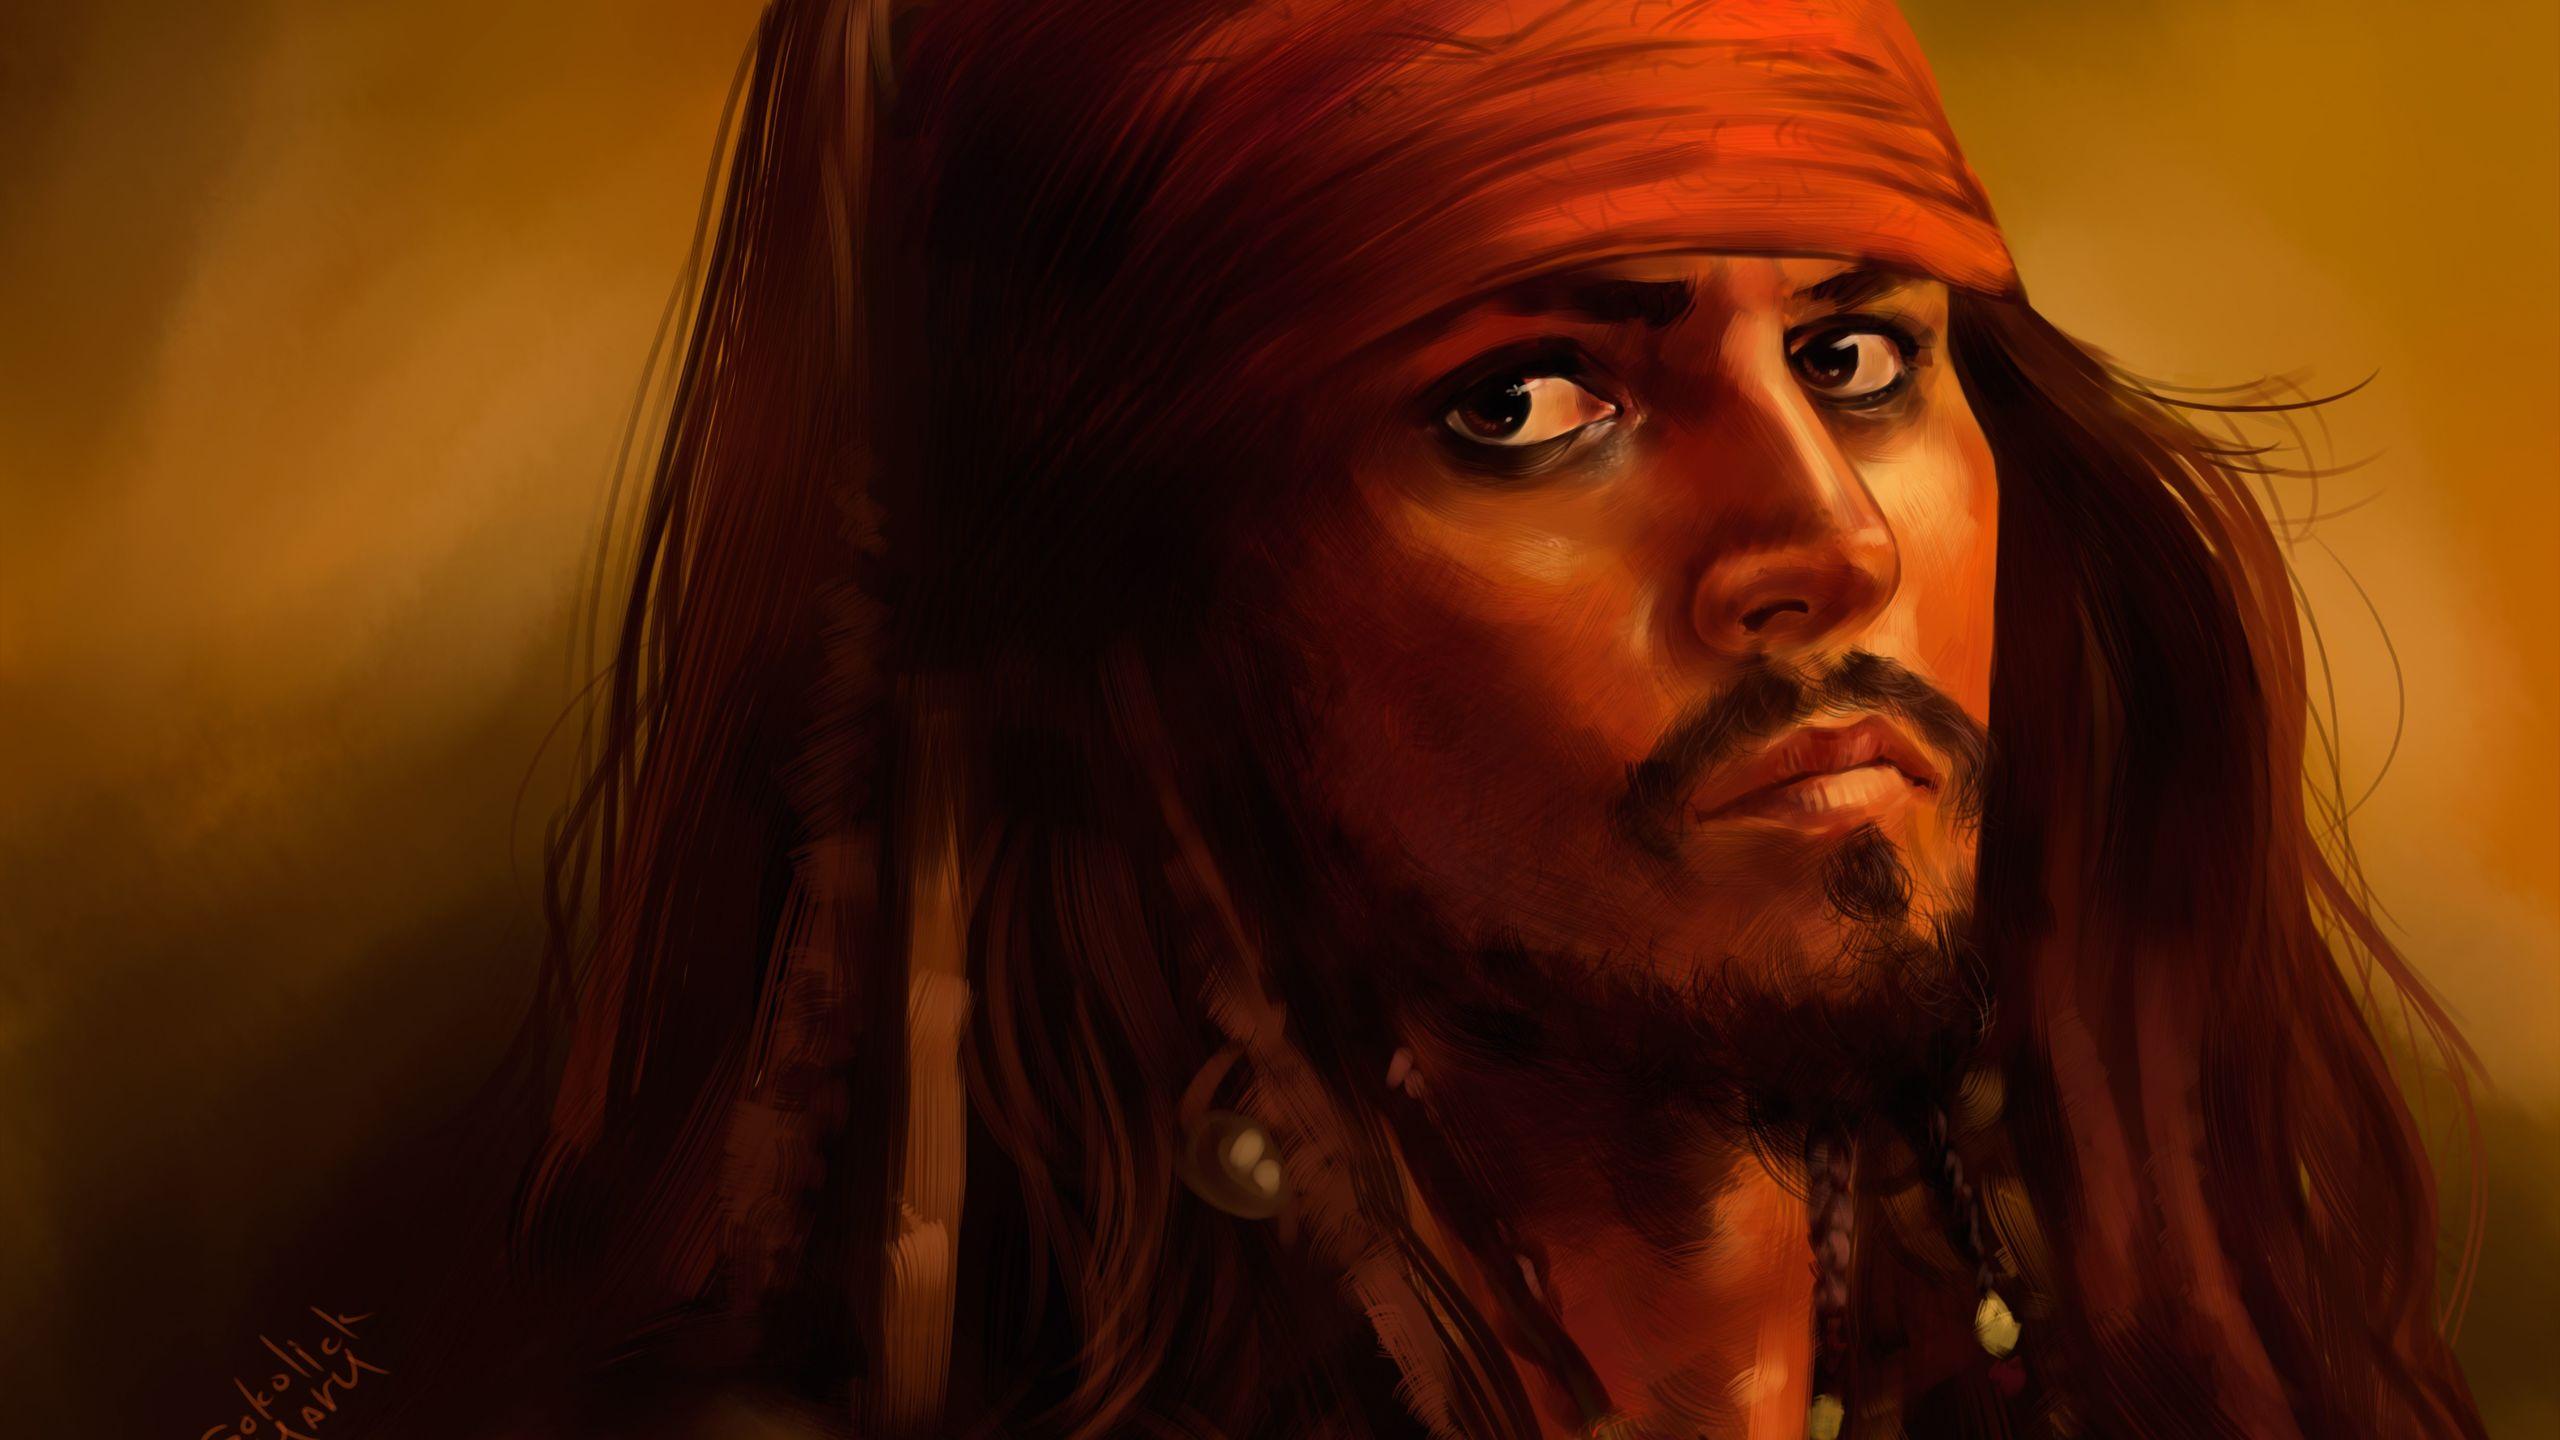 Jack Sparrow 5k Art 1440P Resolution HD 4k Wallpaper